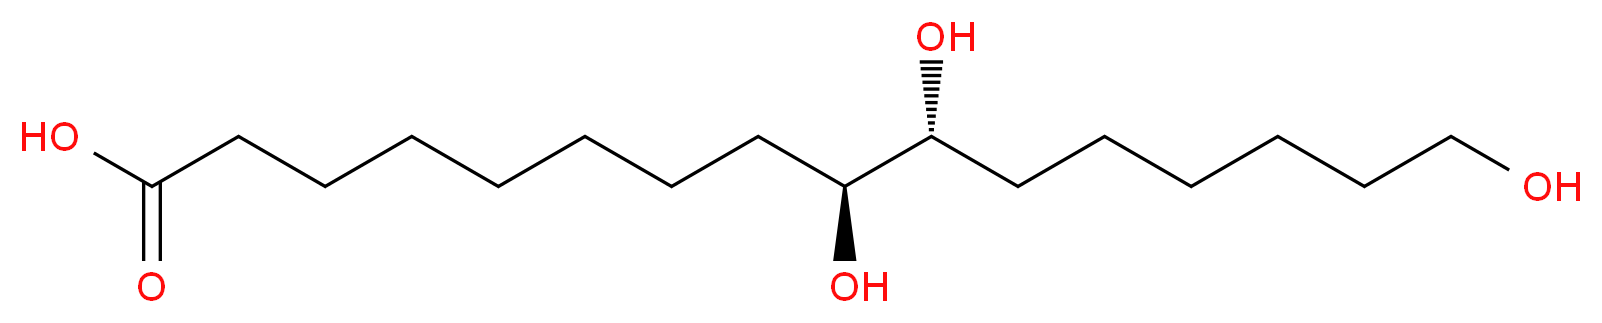 Aleuritic acid_Molecular_structure_CAS_533-87-9)